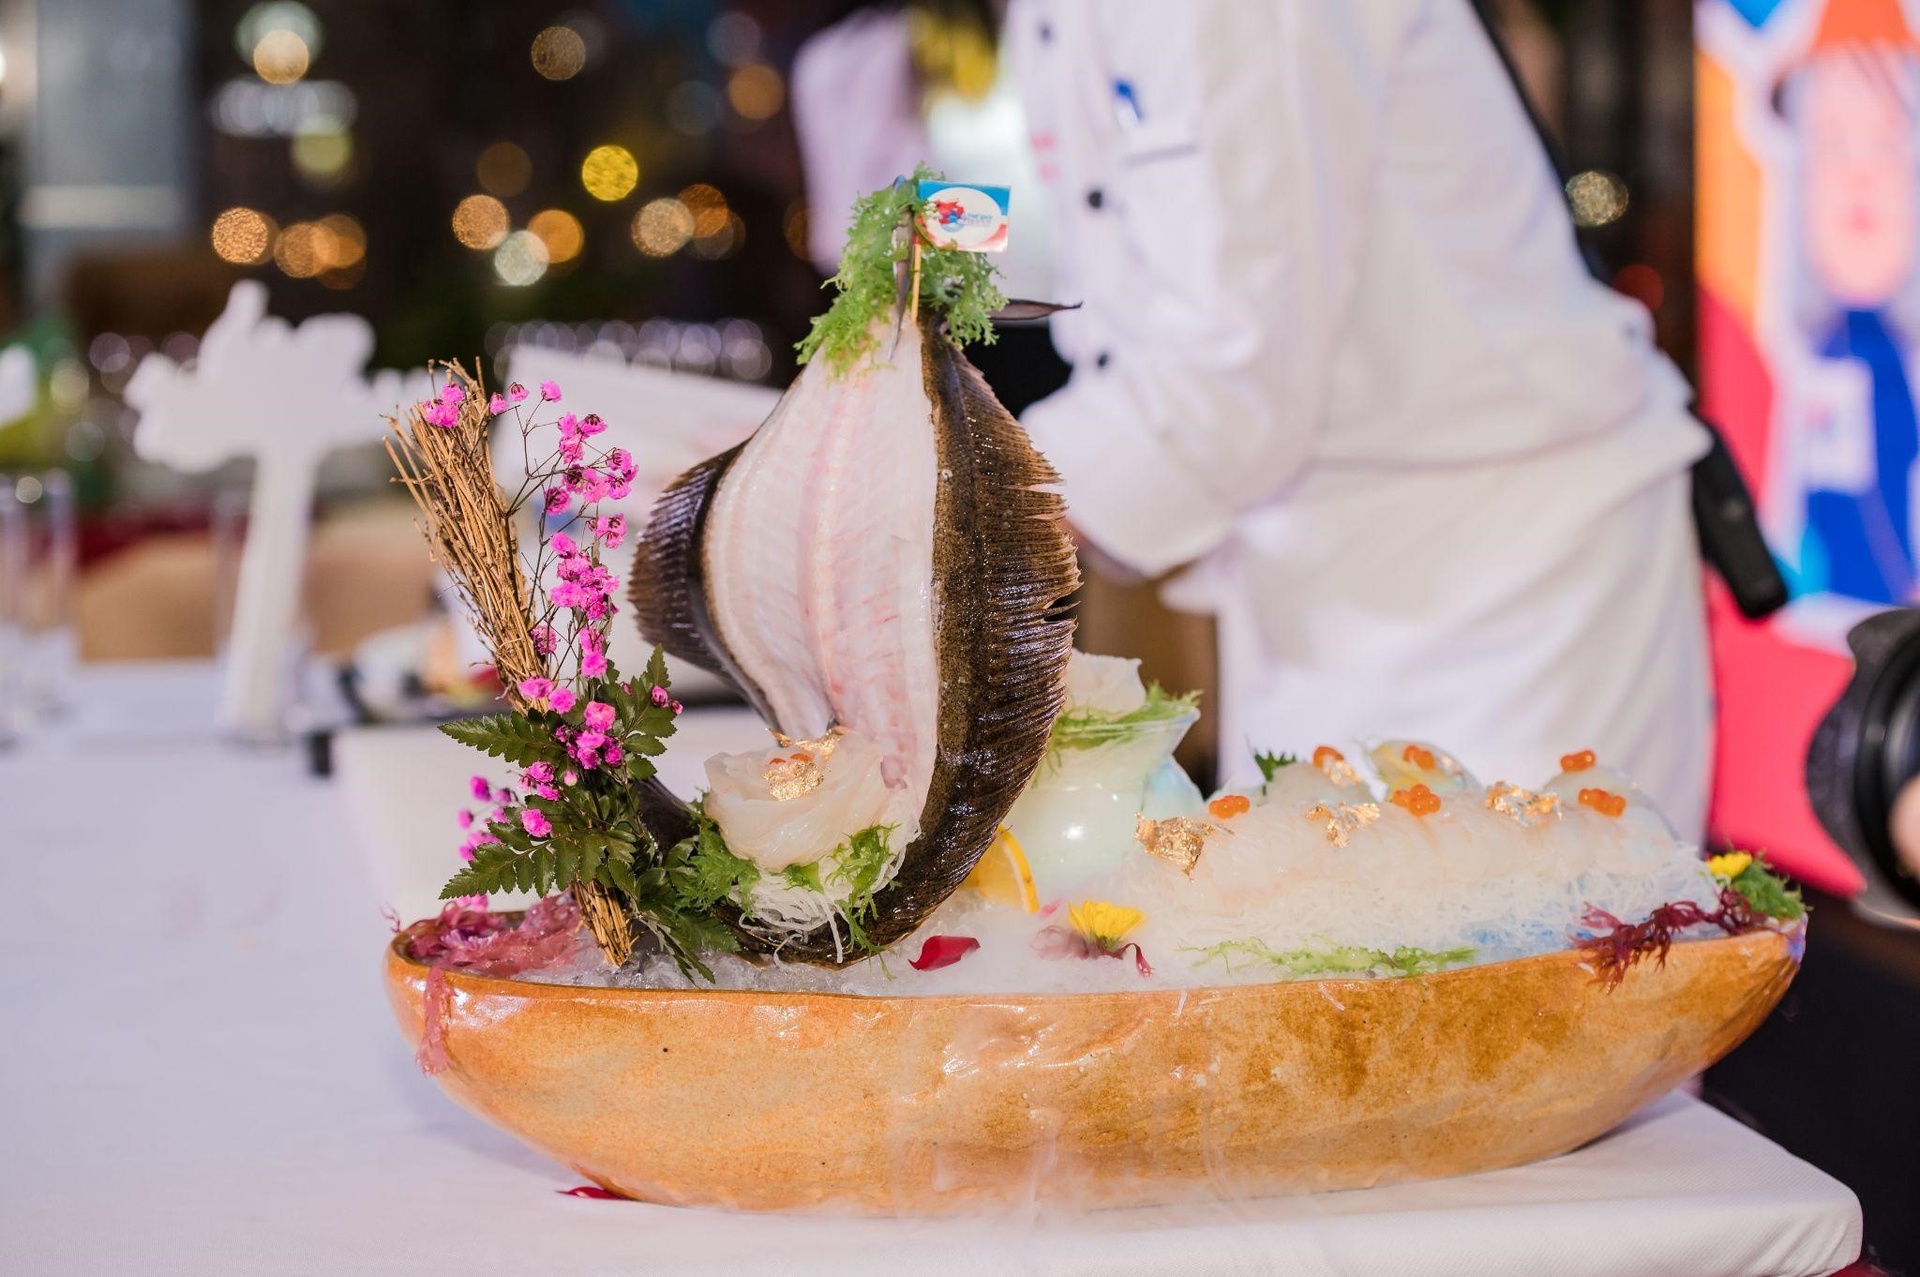 Thuyền sashimi “Thuận buồm xuôi gió” từ cá bơn olive độc đáo.